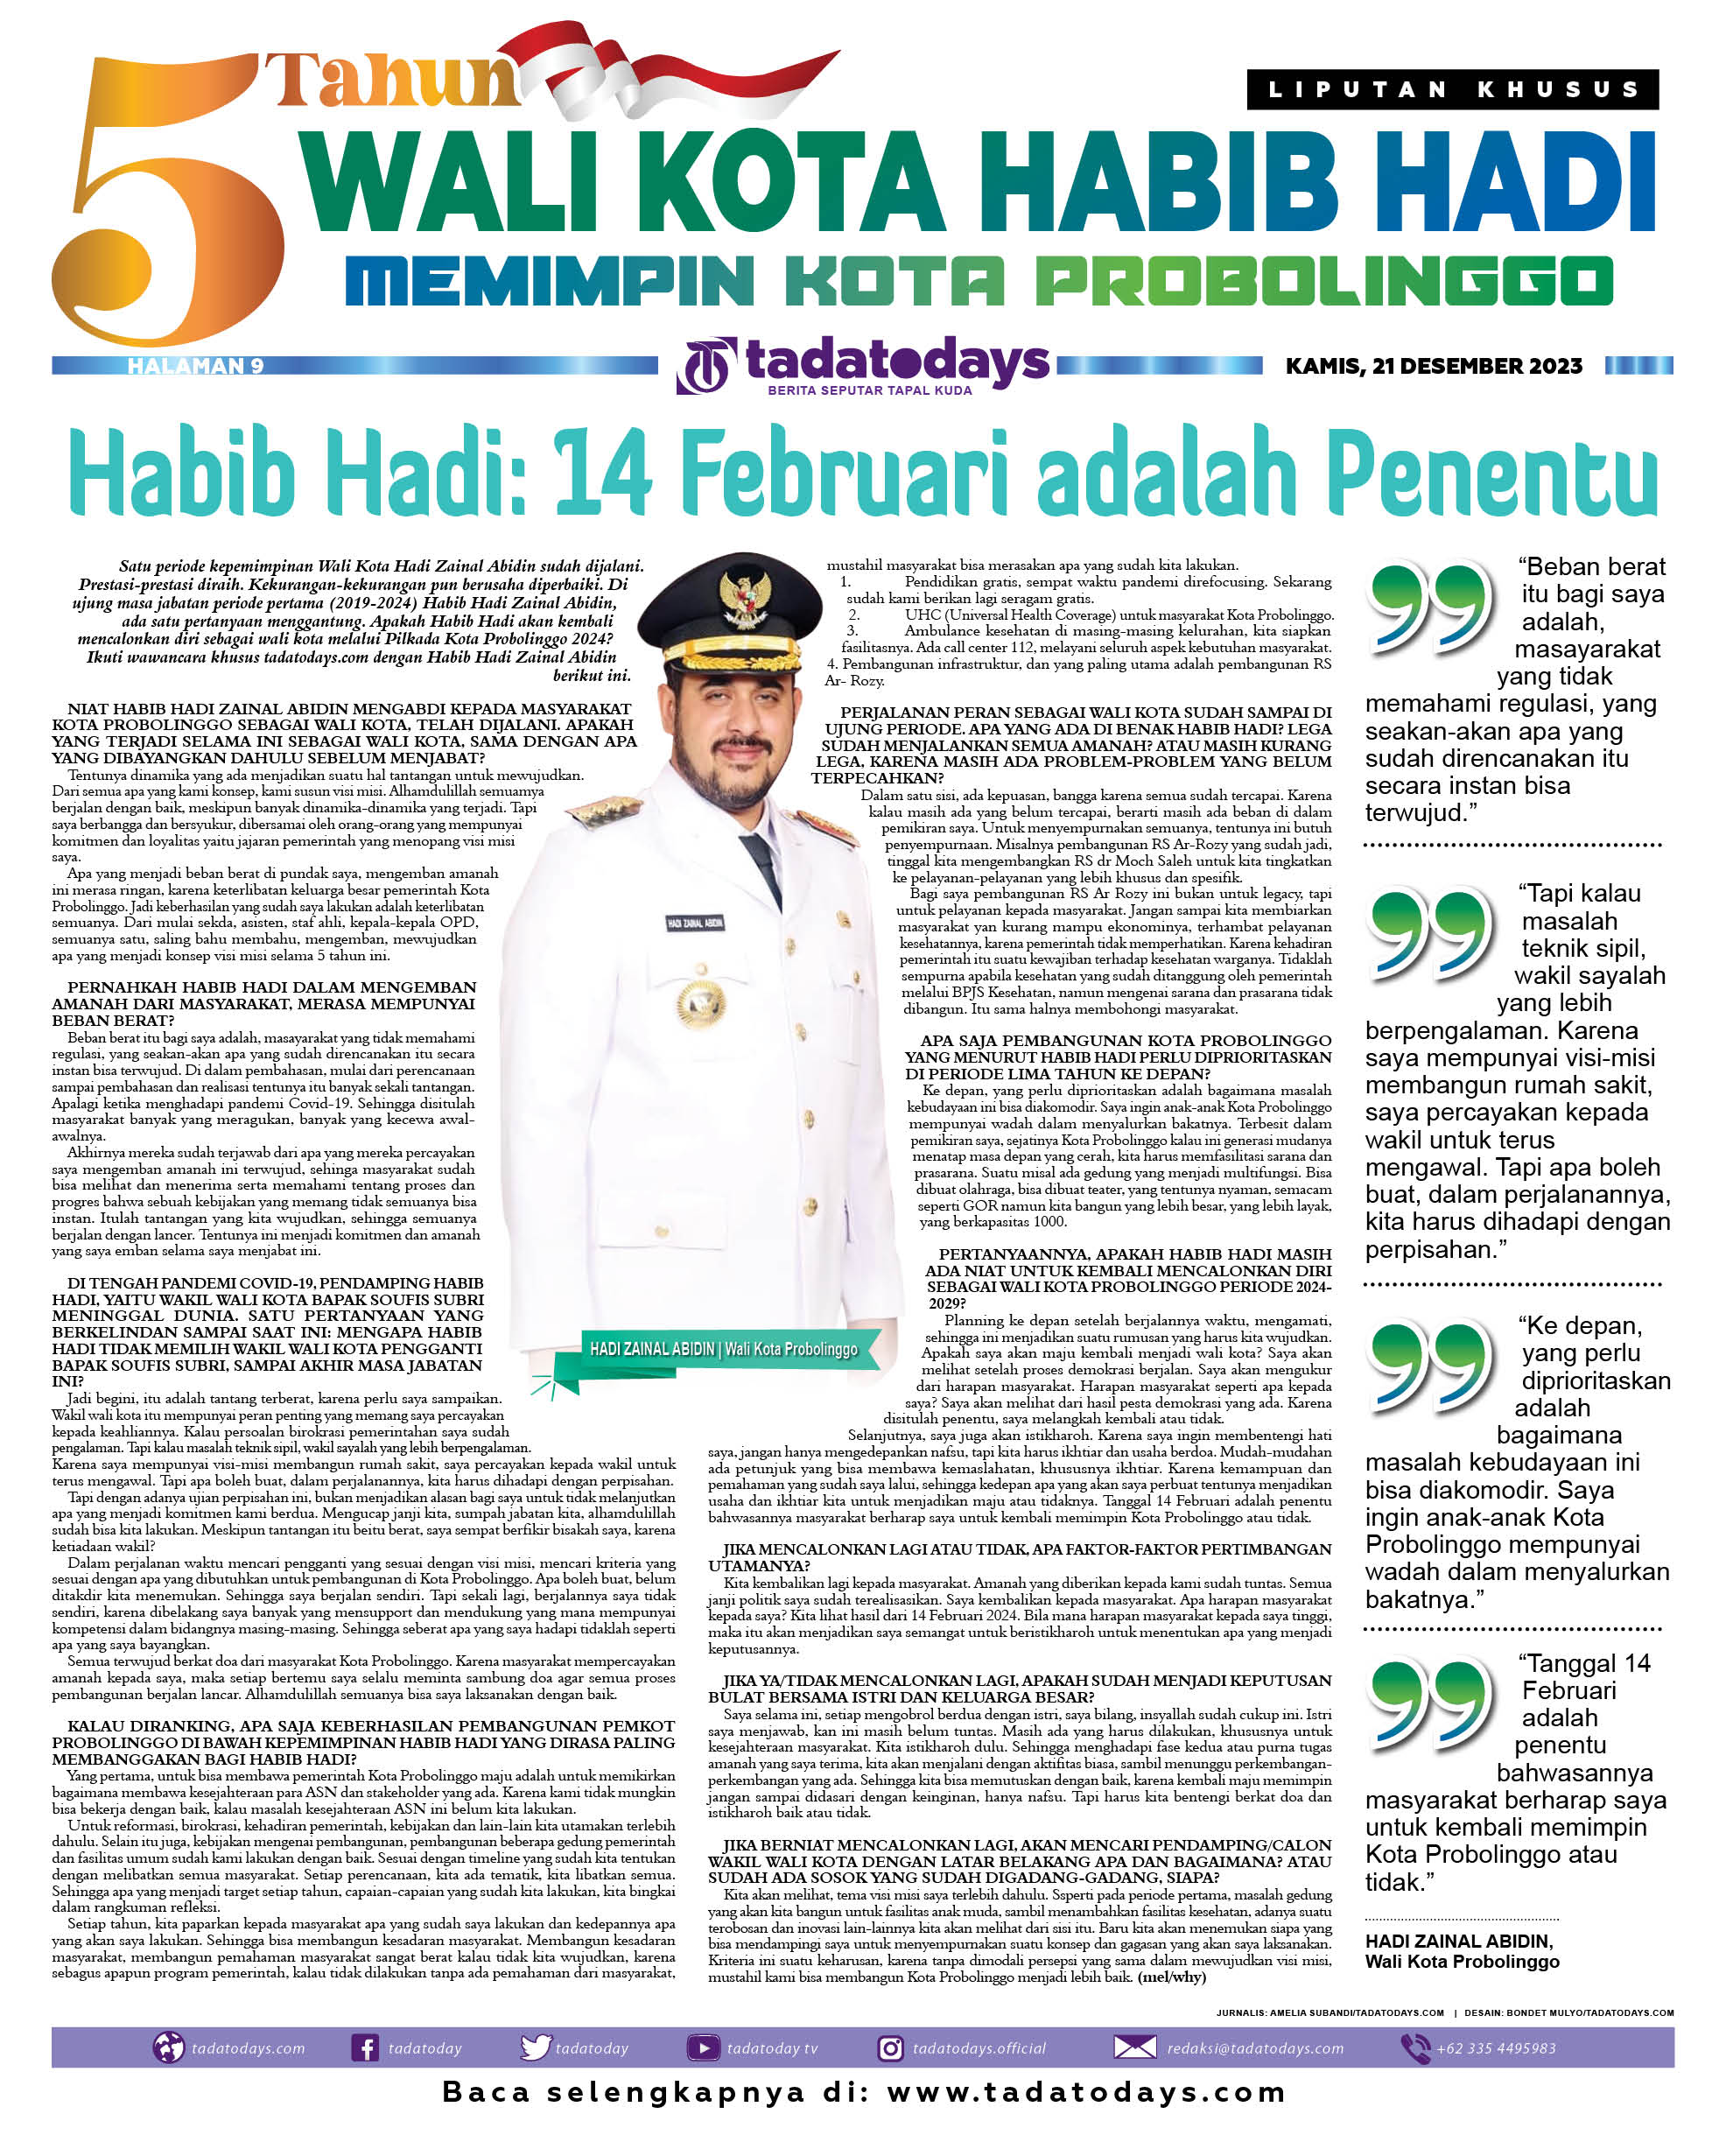 Habib Hadi Zainal Abidin: 14 Februari adalah Penentu